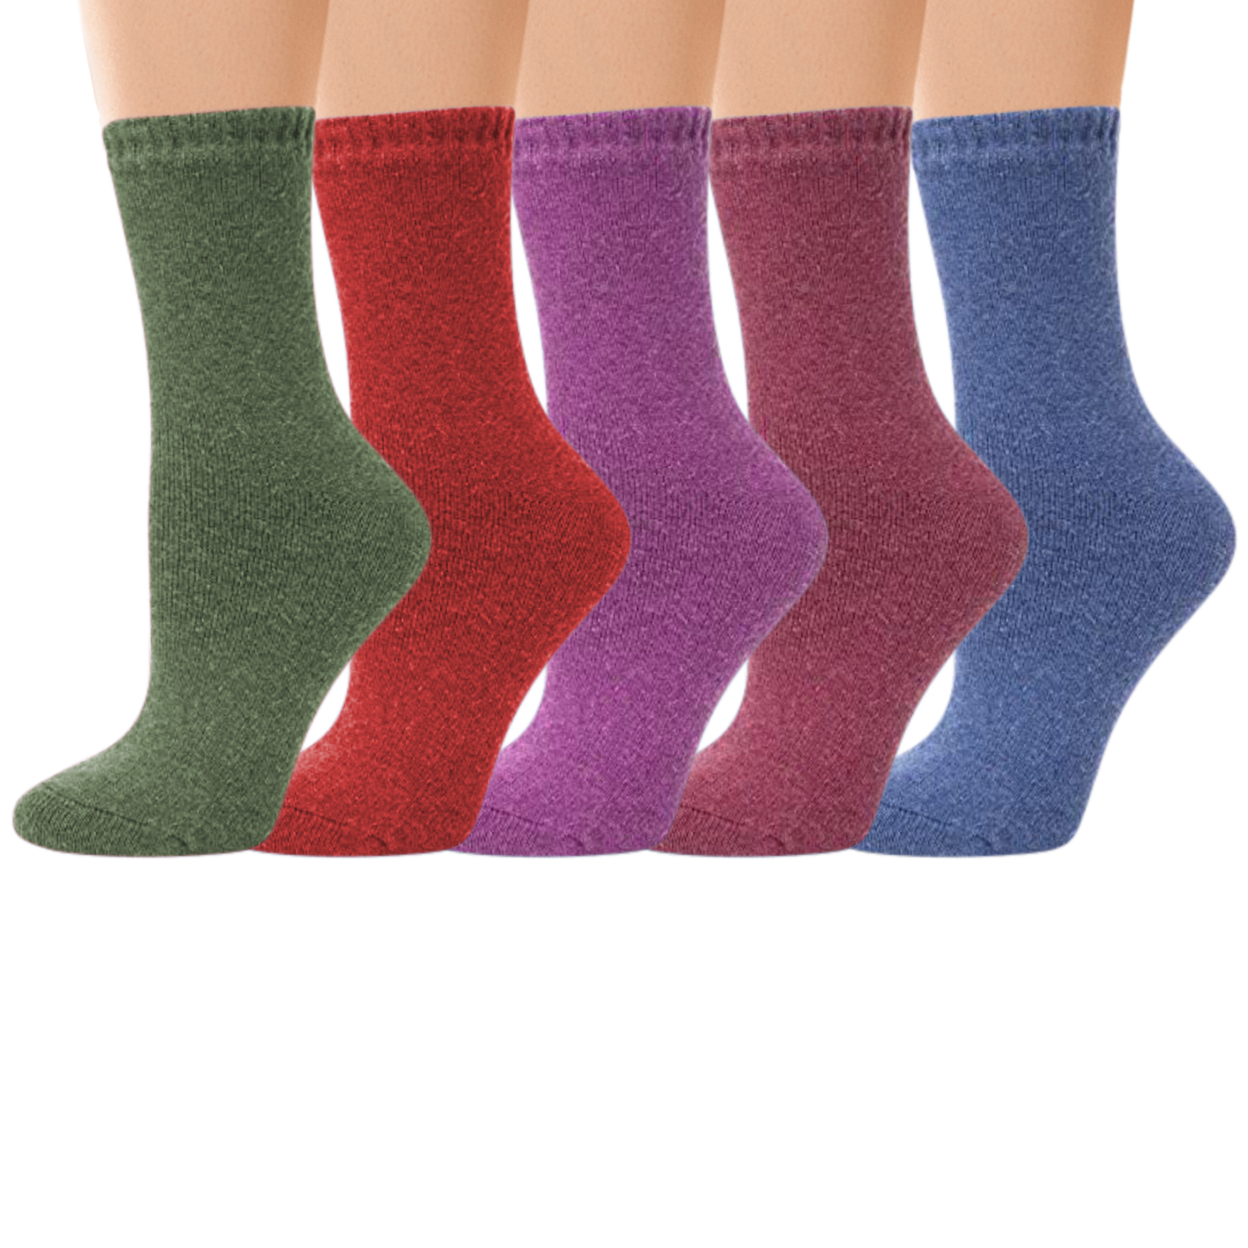 4-Pairs: Women's Warm Thick Merino Lamb Wool Winter Thermal Socks